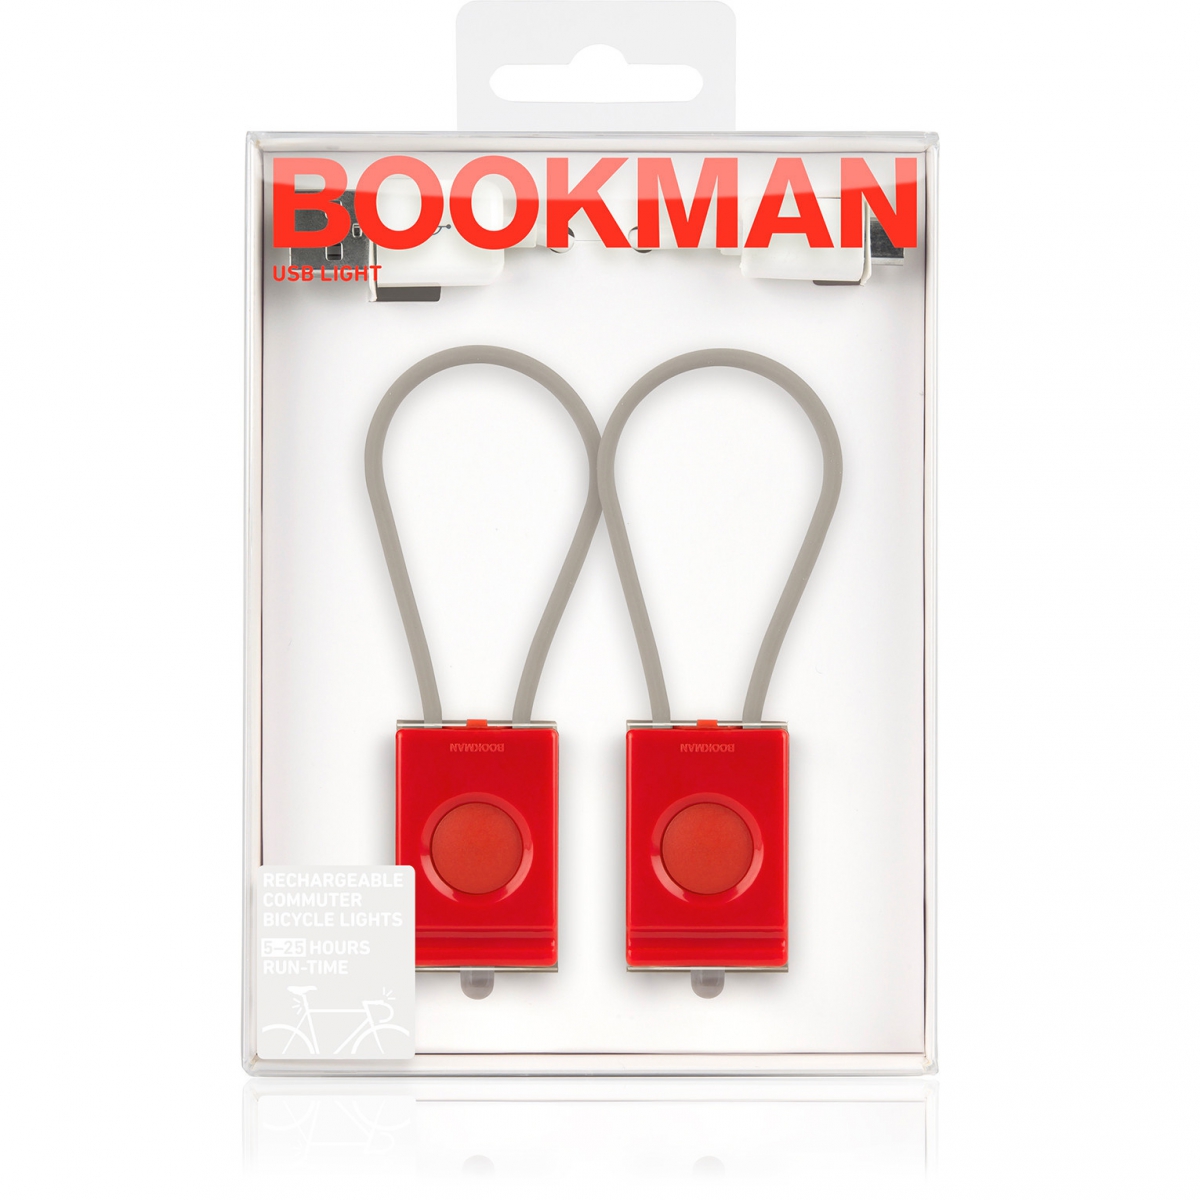 bookman-usb-sada-7.jpg